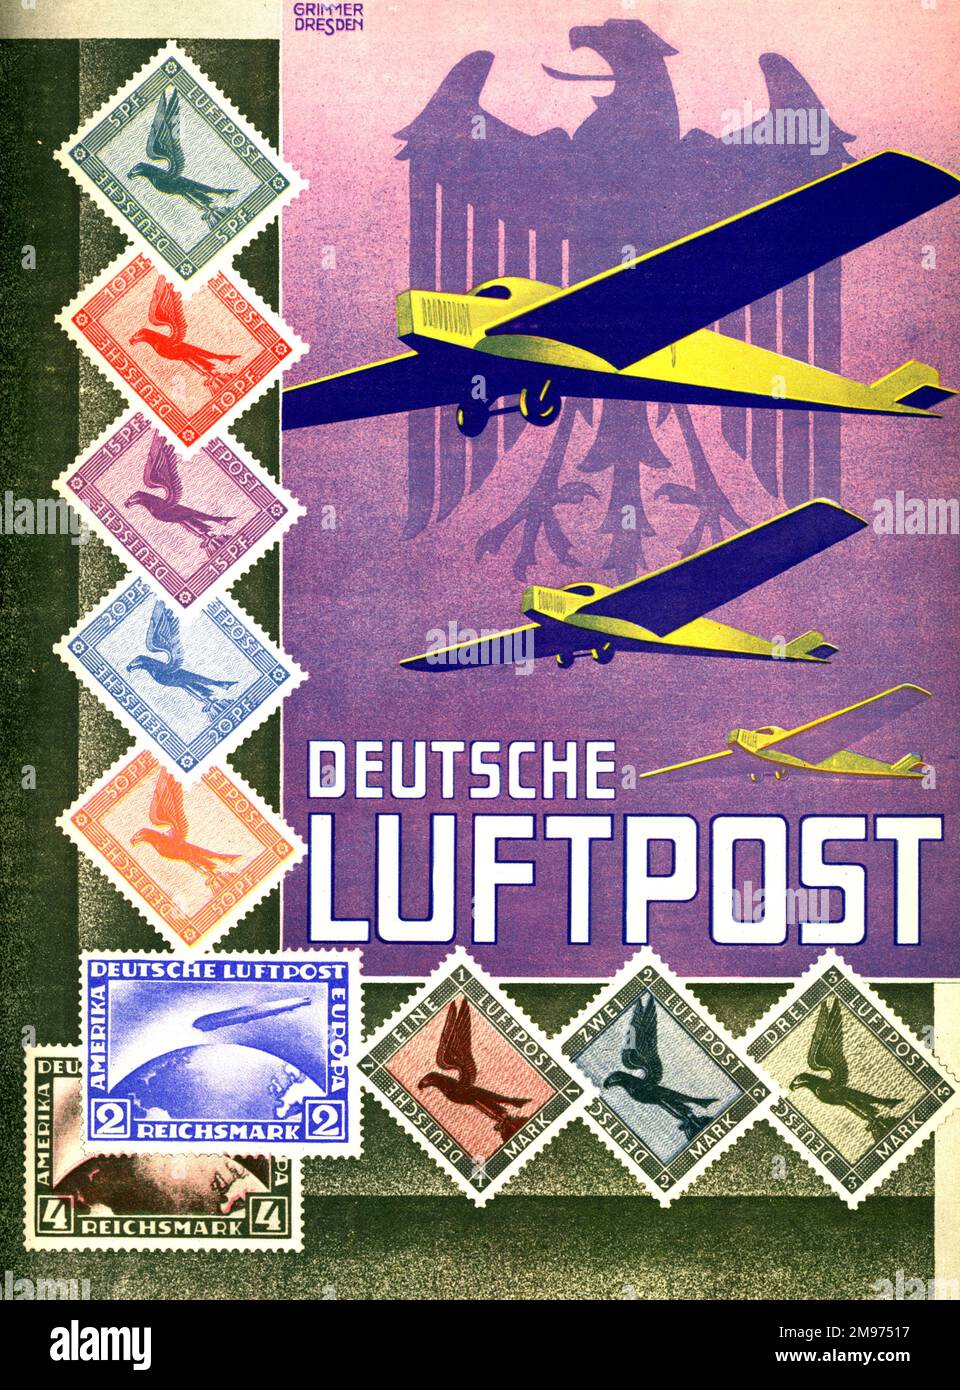 Deutsche Luftpost advert. circa 1931. Stock Photo